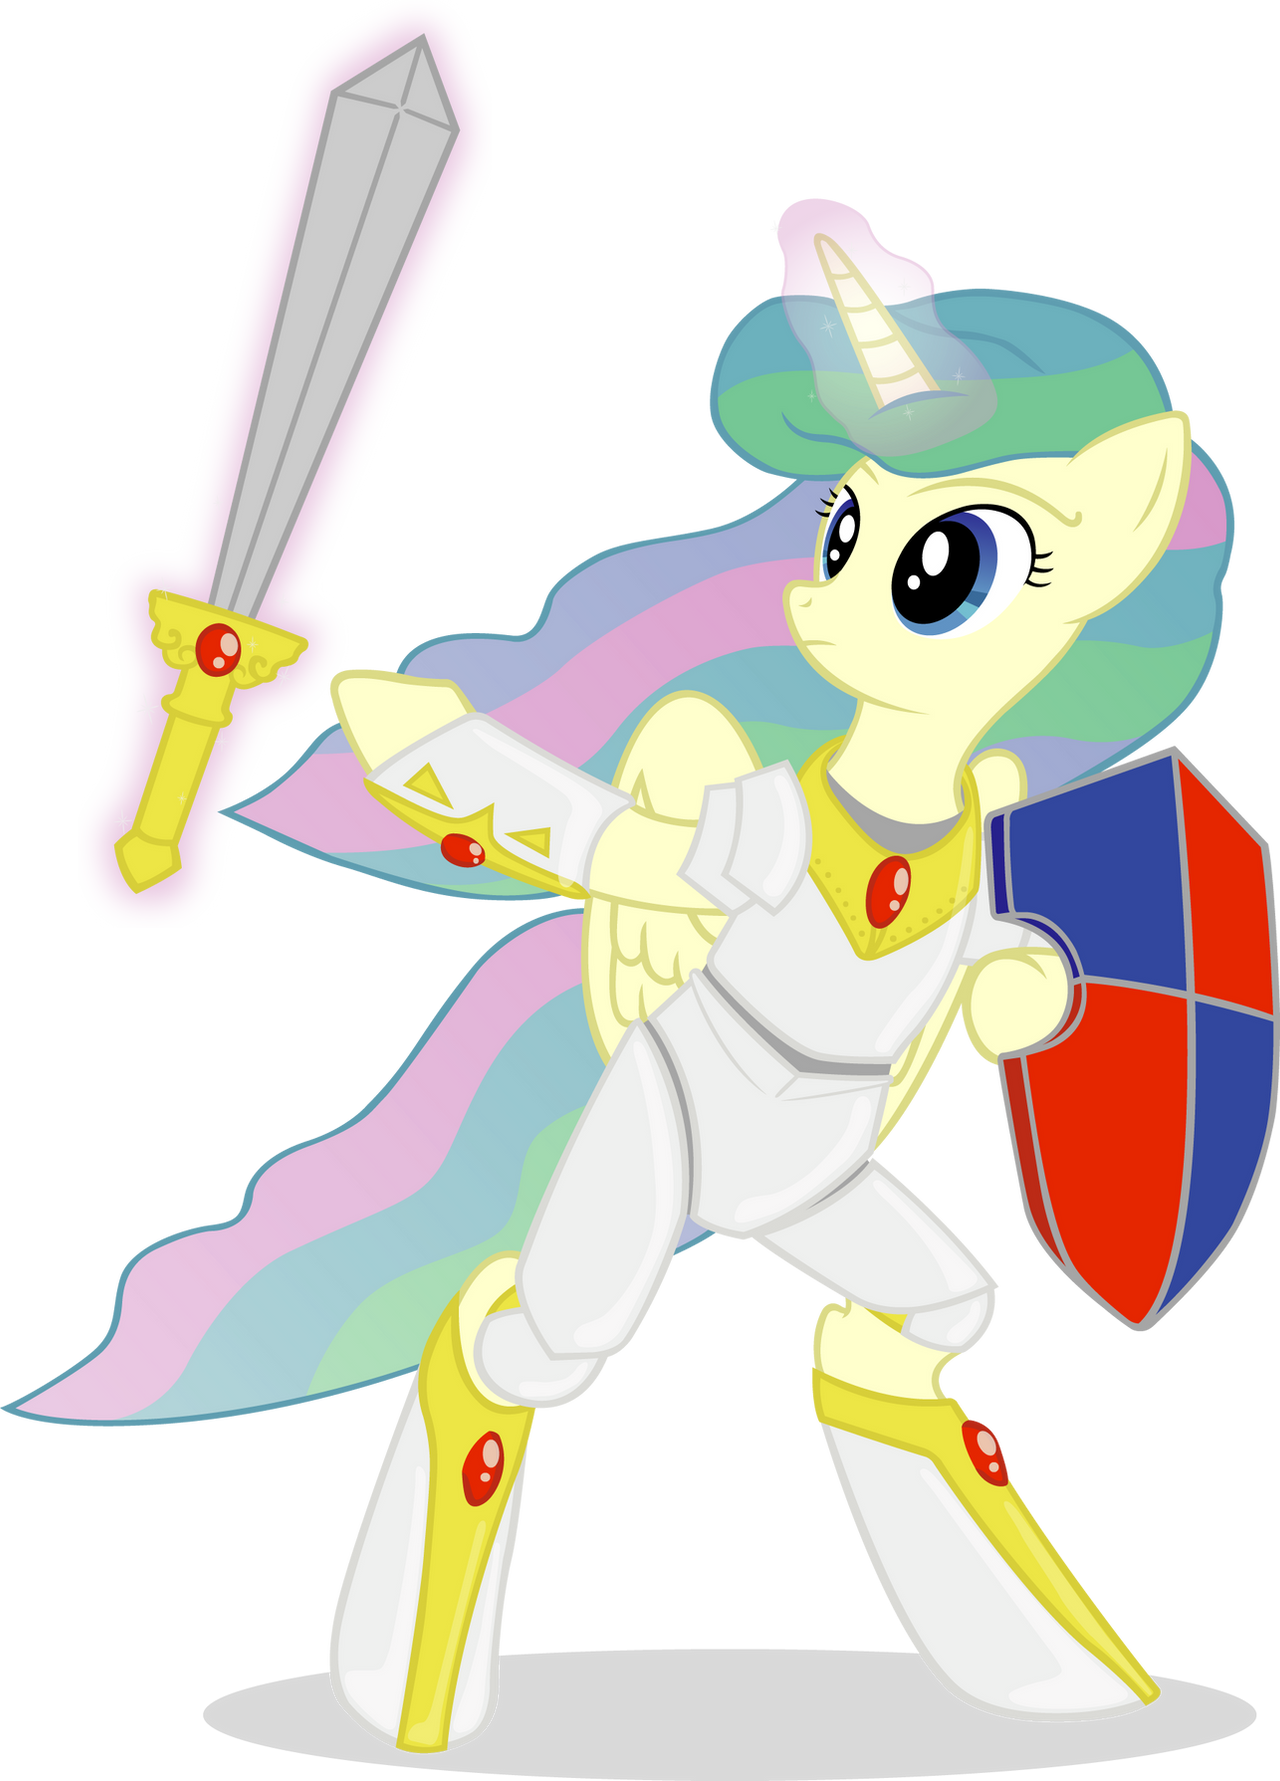 Knight of Equestria